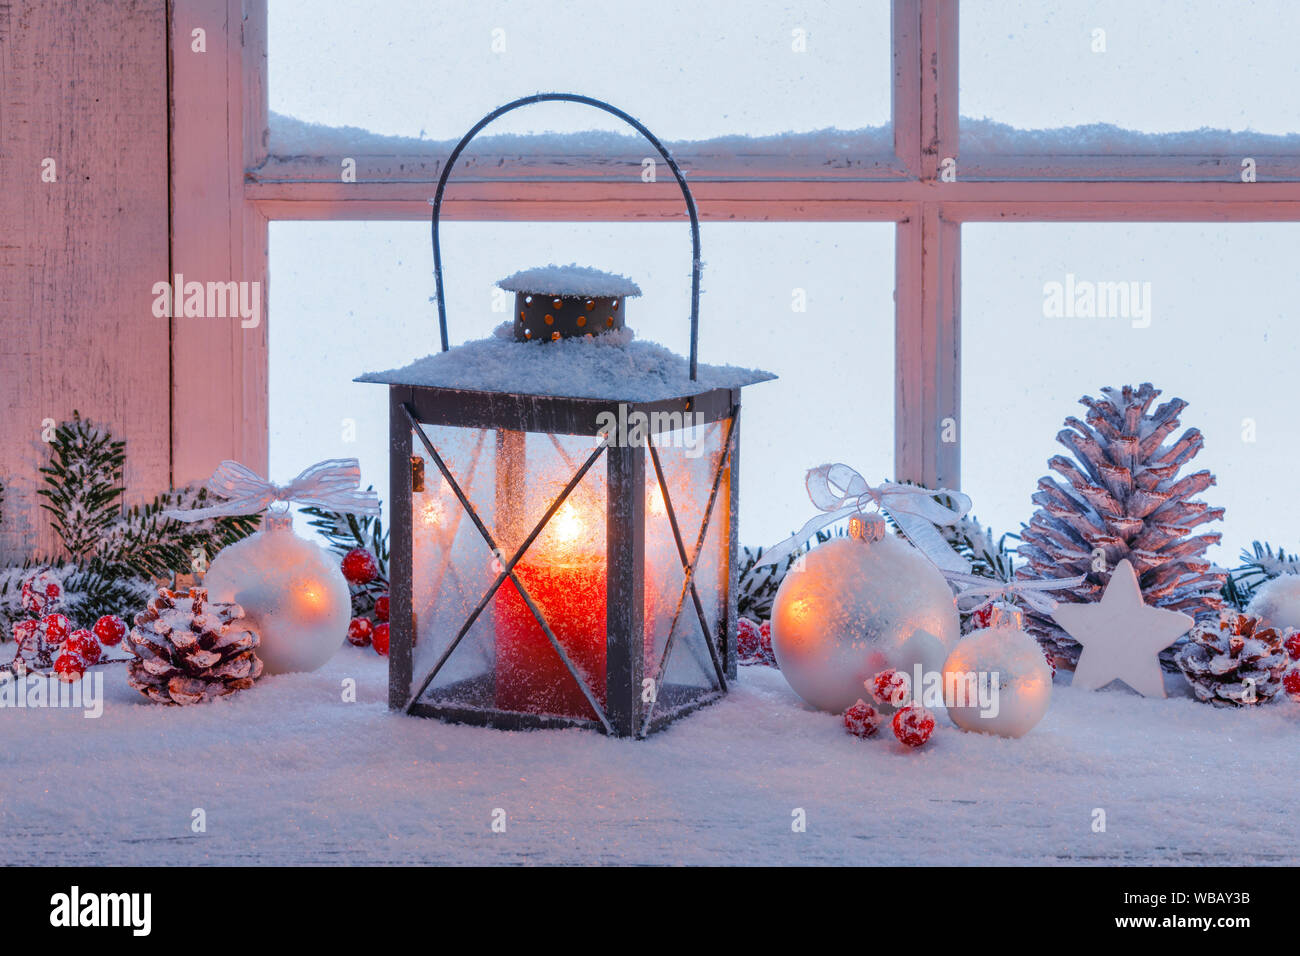 Laterne mit Weihnachten Dekoration auf der Fensterbank. Schweiz  Stockfotografie - Alamy